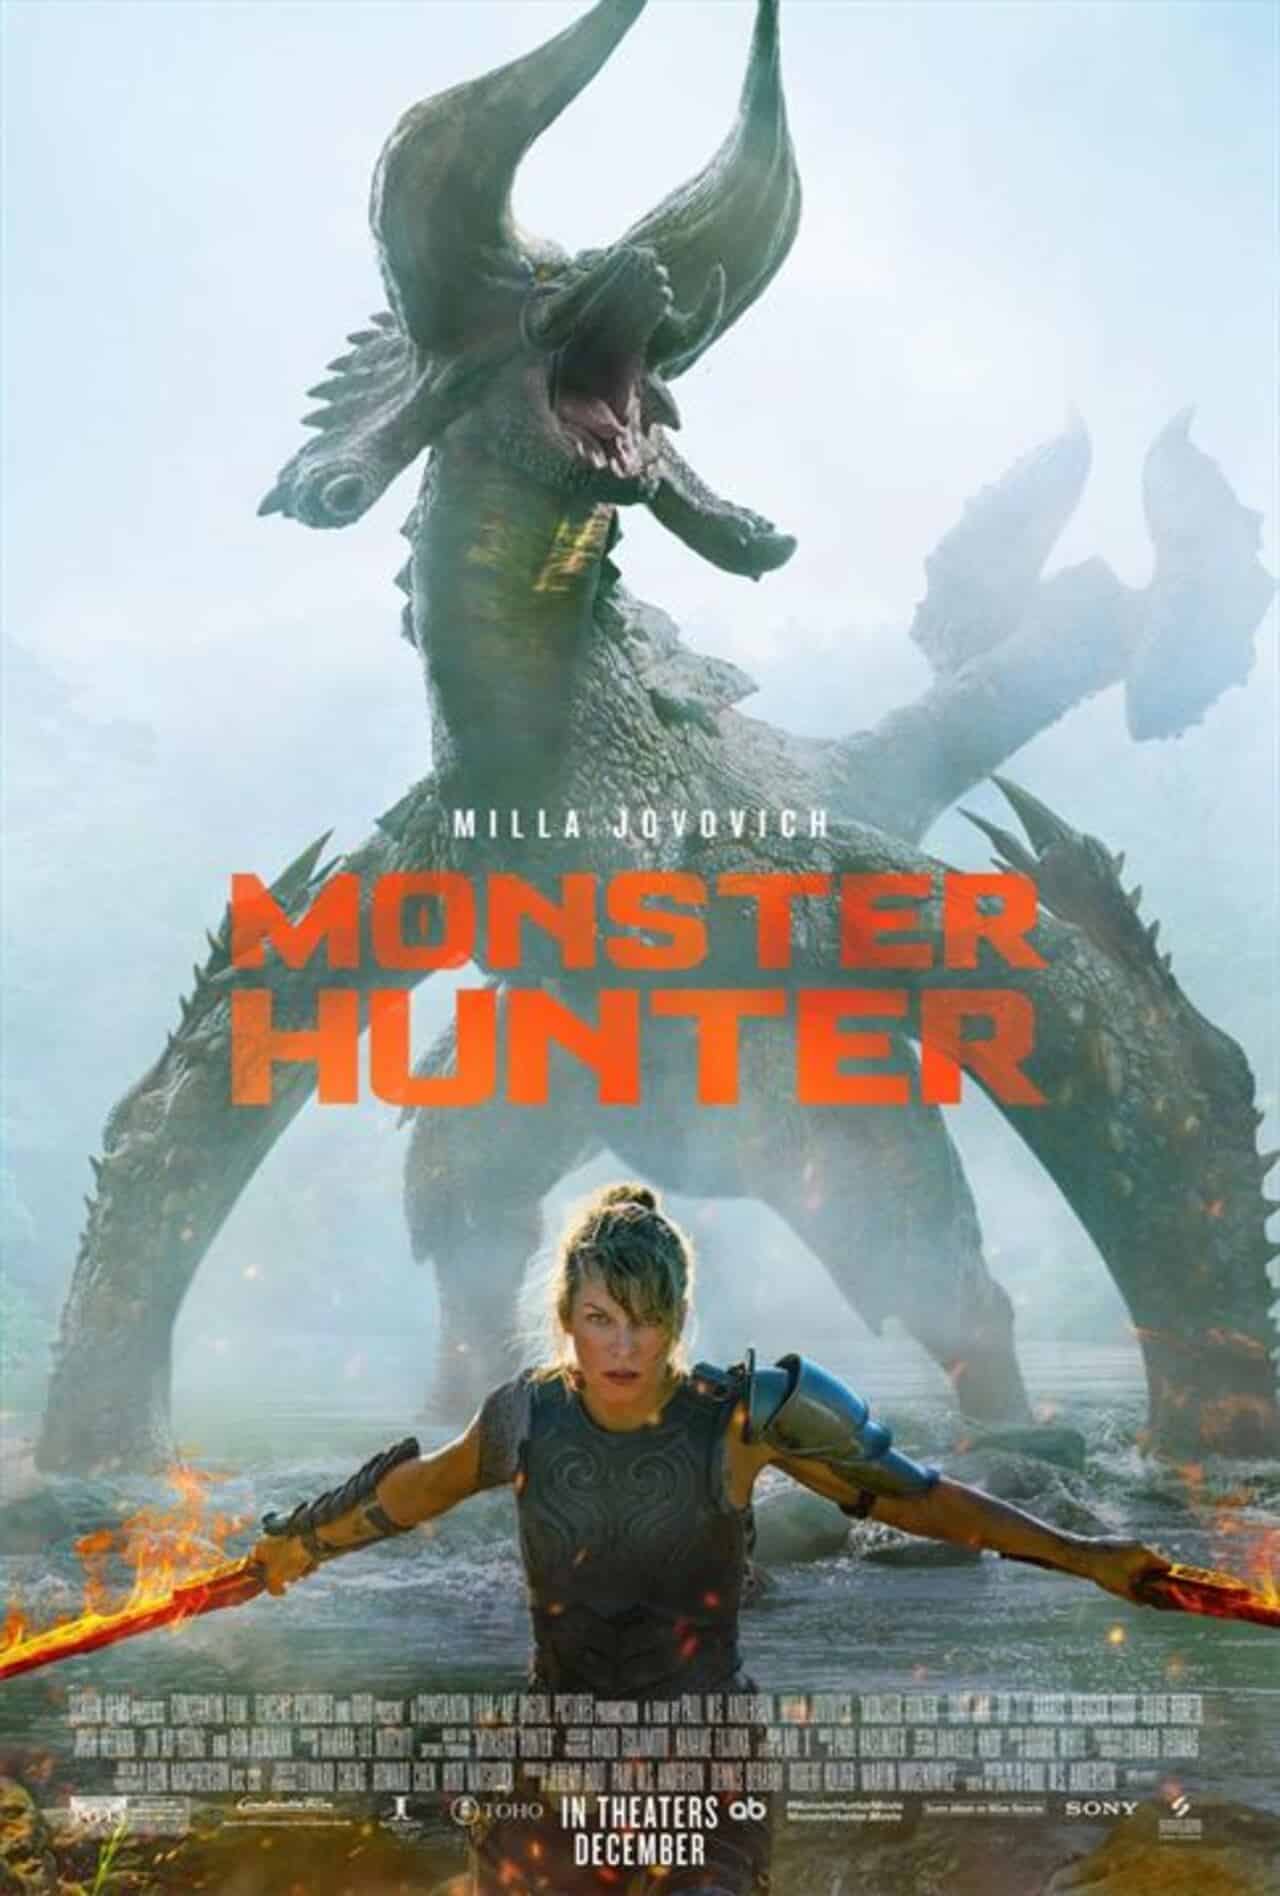 Primeras críticas de la película Monster Hunter: ¿Deberías verla?